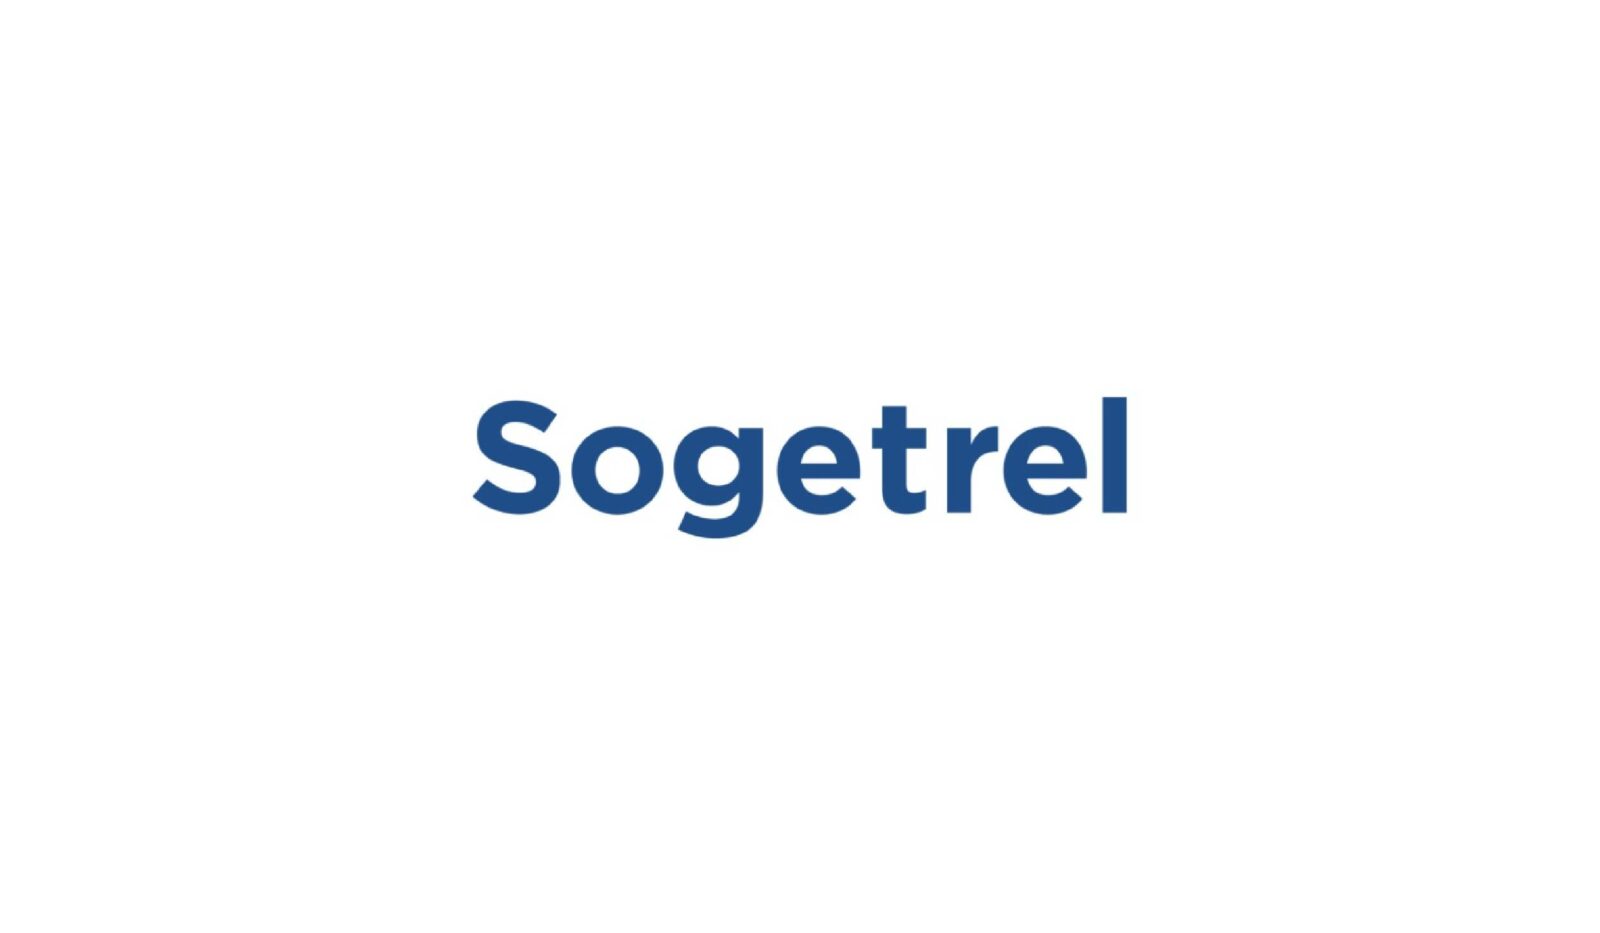 https://www.ccifrance-allemagne.fr/wp-content/uploads/2021/06/sogetrel-logo-scaled.jpg